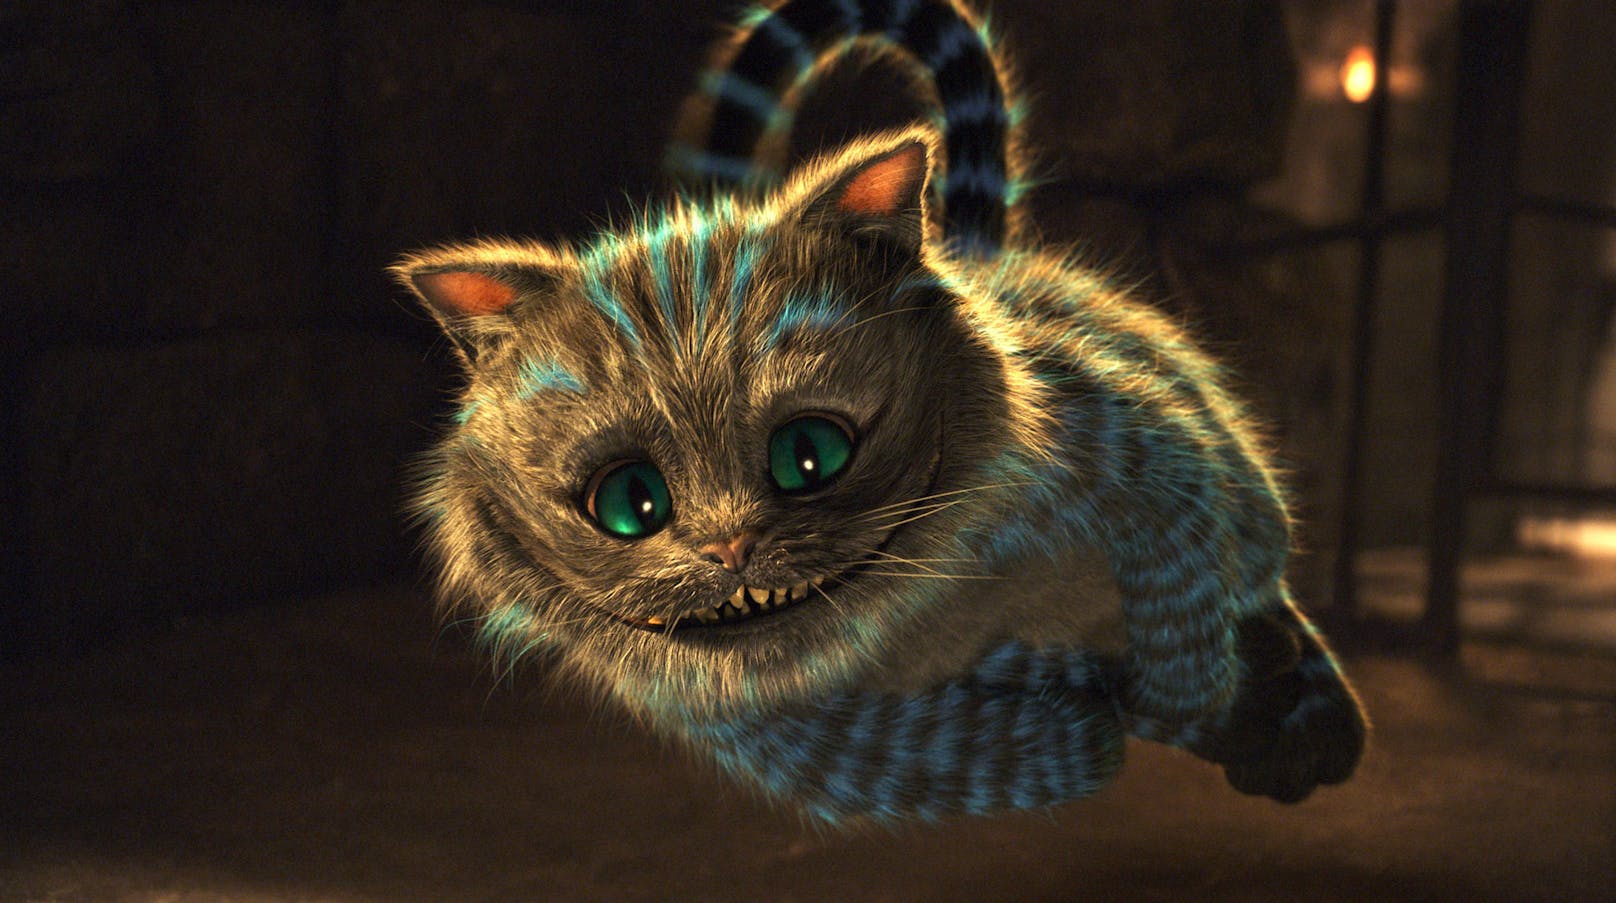 <strong>Die Grinsekatze</strong>, oder "<strong>Cheshire Cat</strong>" aus Alice im Wunderland ist animiert, sowie gezeichnet immer ein rätselhaftes Wesen. Da er sein Herz an der richtigen Stelle hat, verzeiht man ihm so manchen Unsinn. 